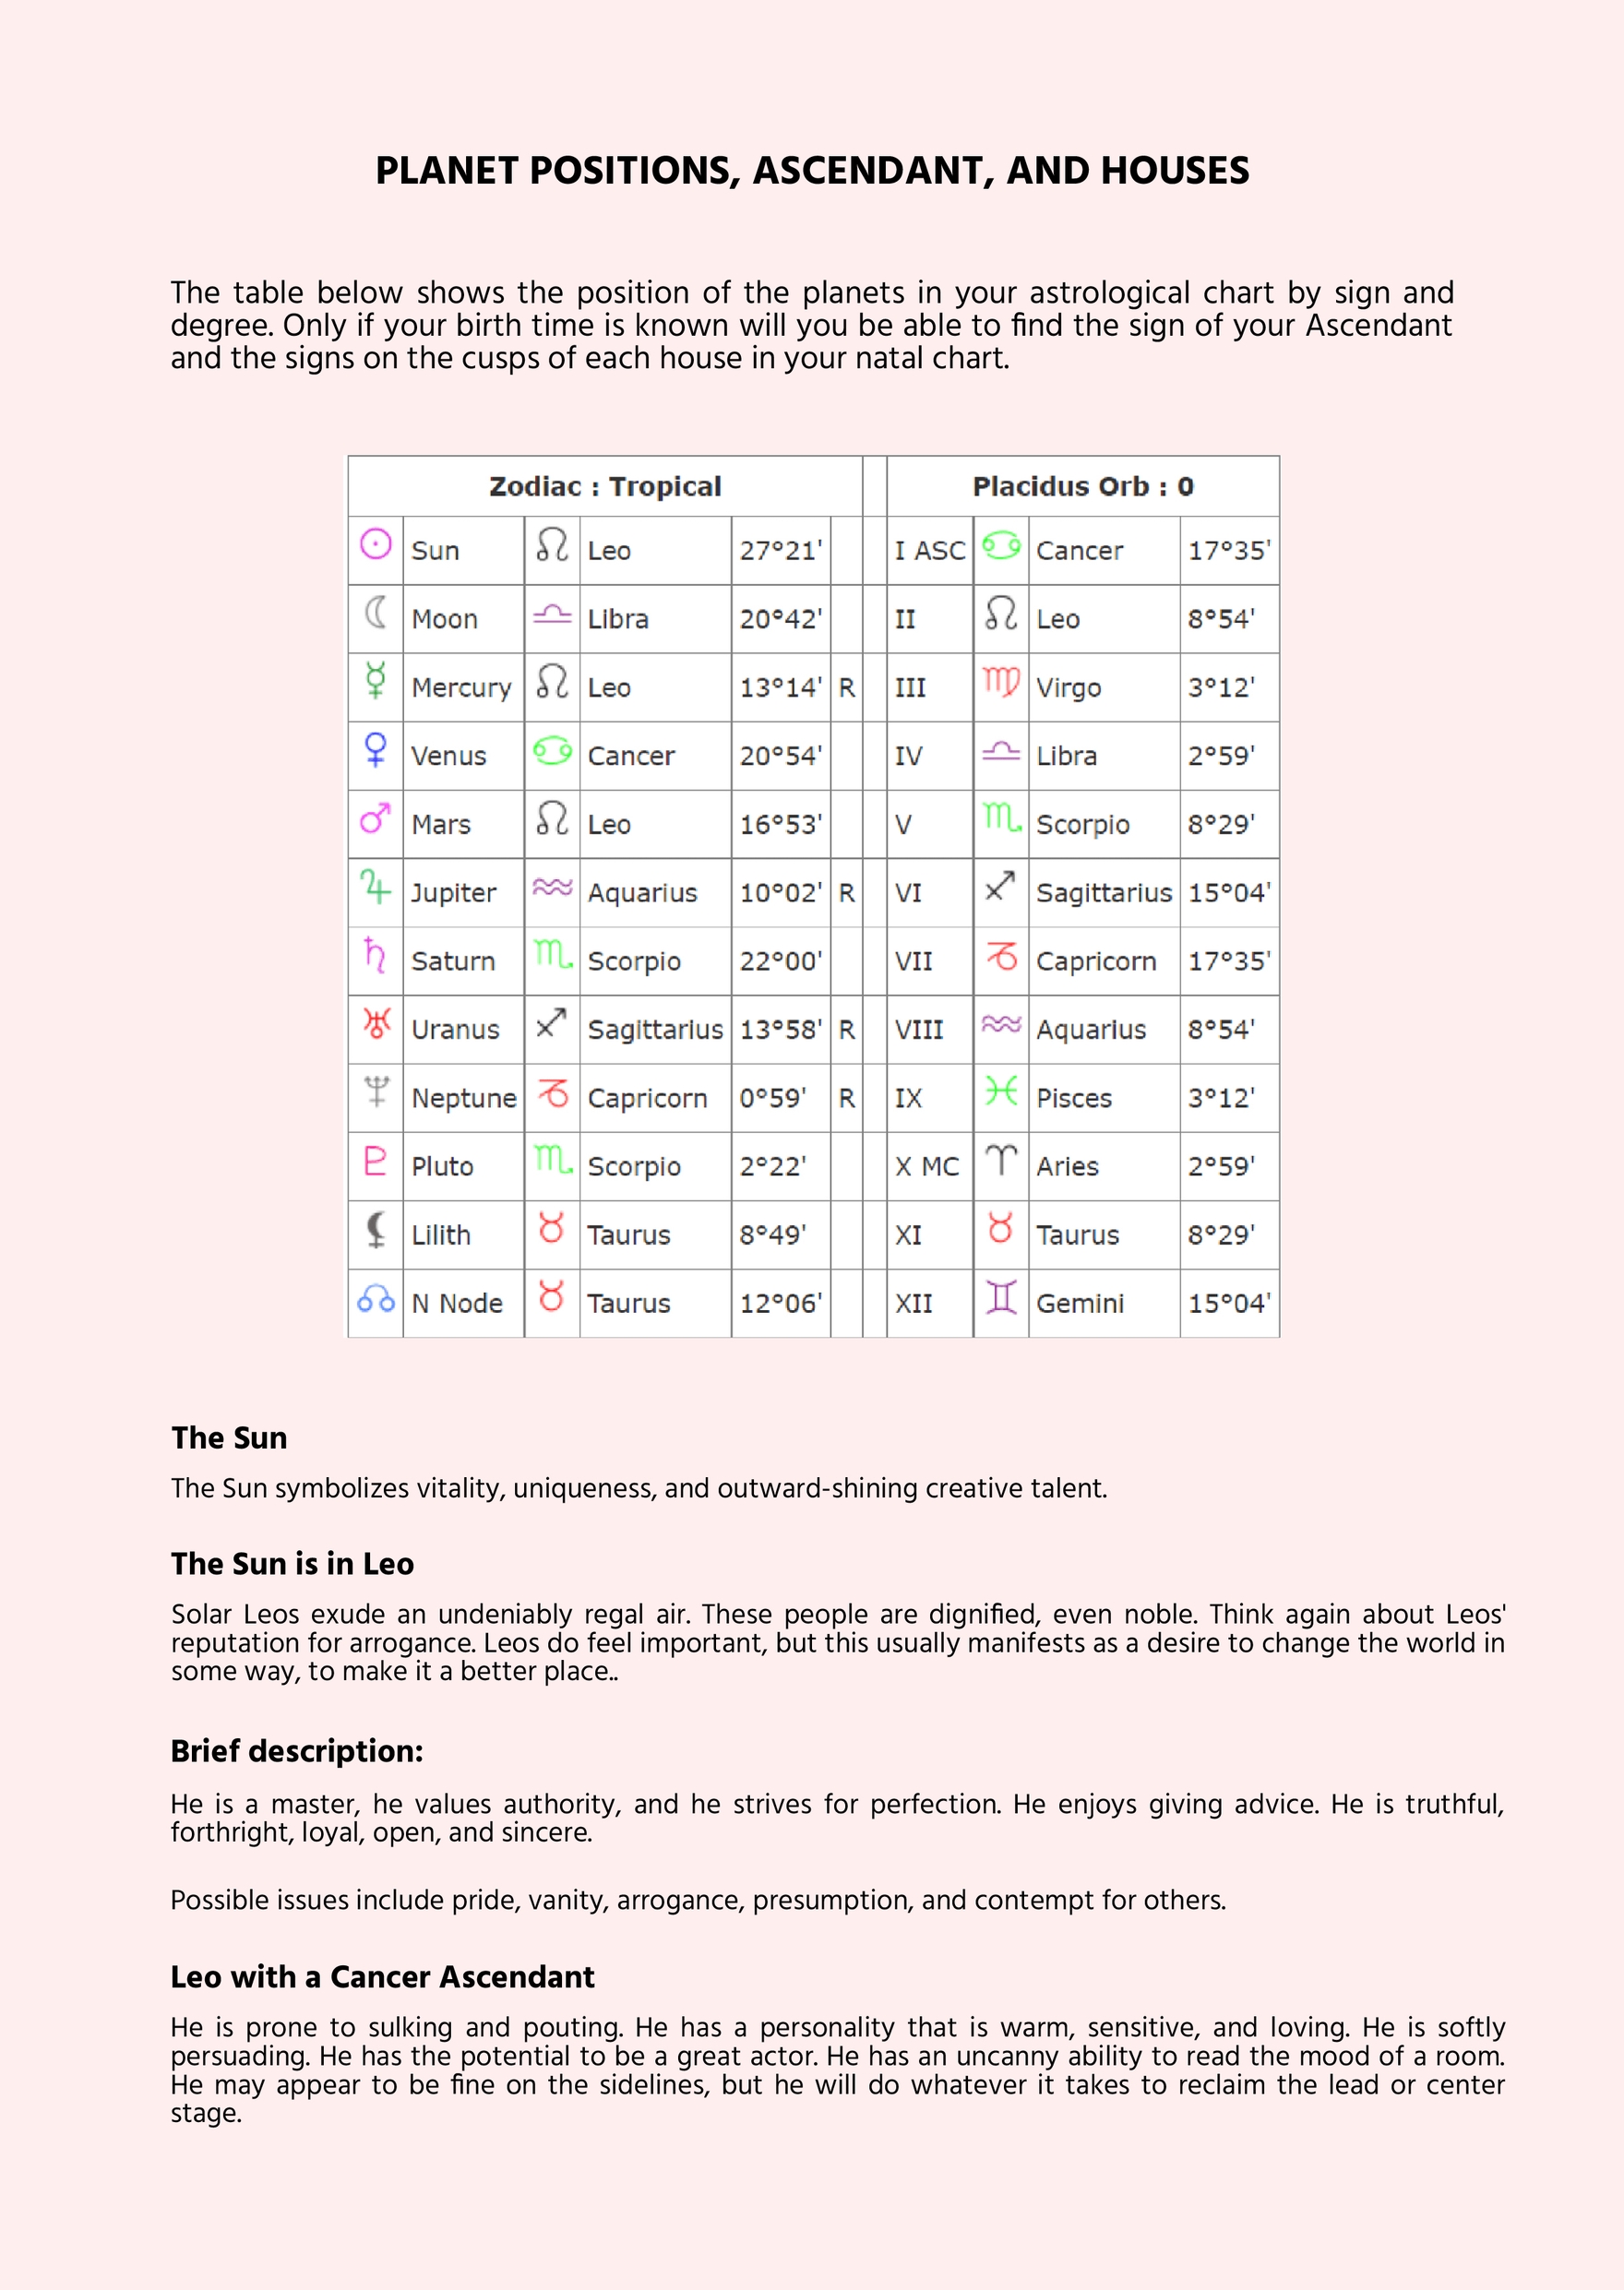 Digital Astrology Chart Template